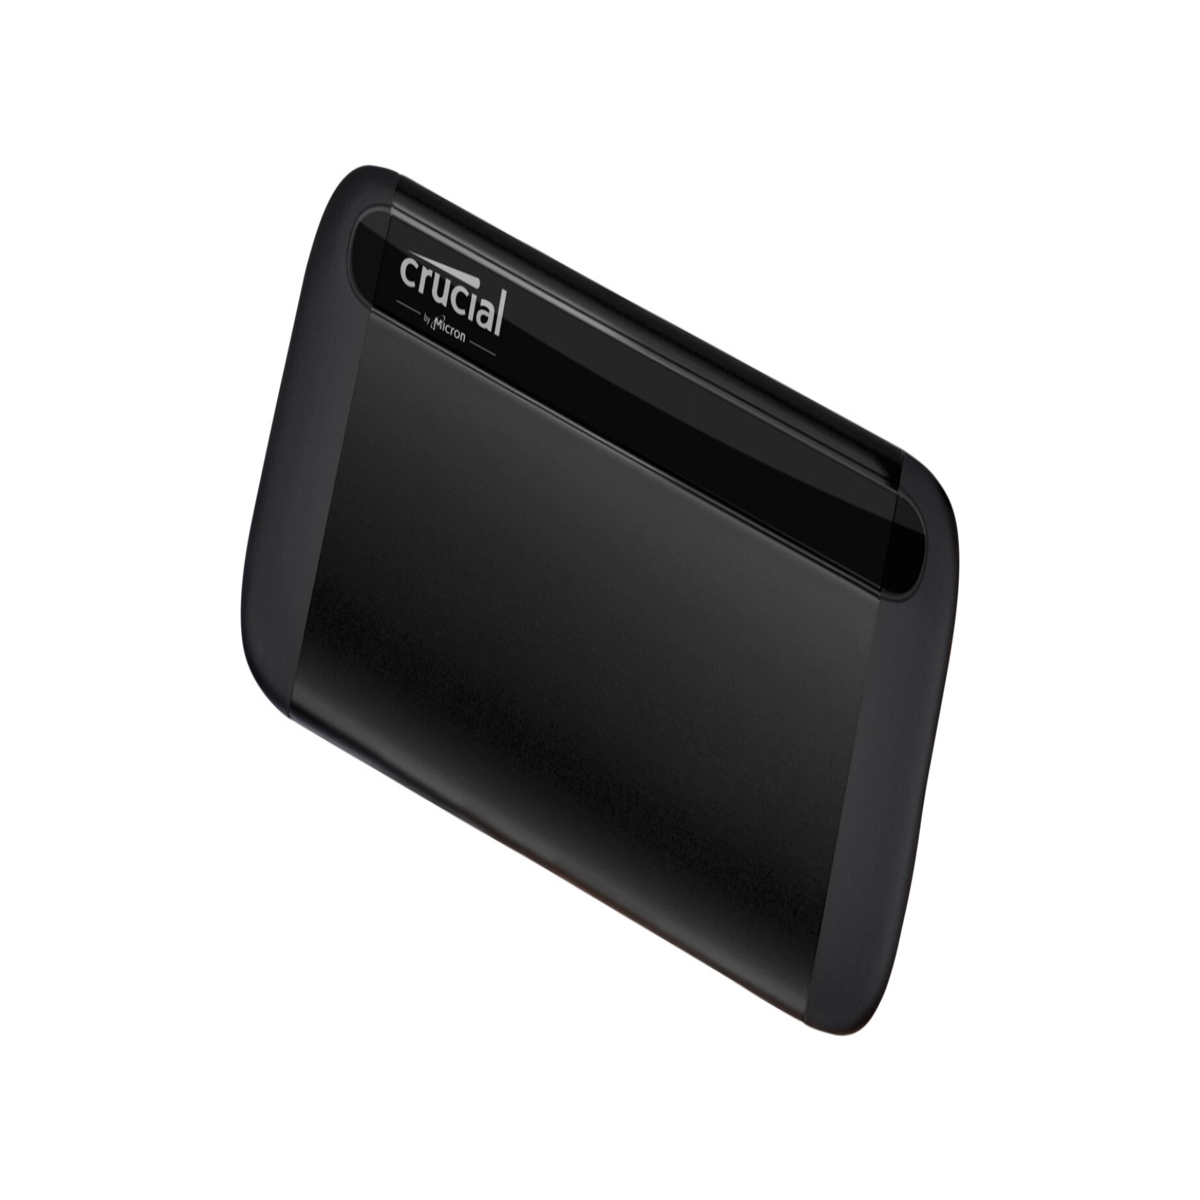 Promo : un SSD portable Crucial de 1 To à 71,2 €